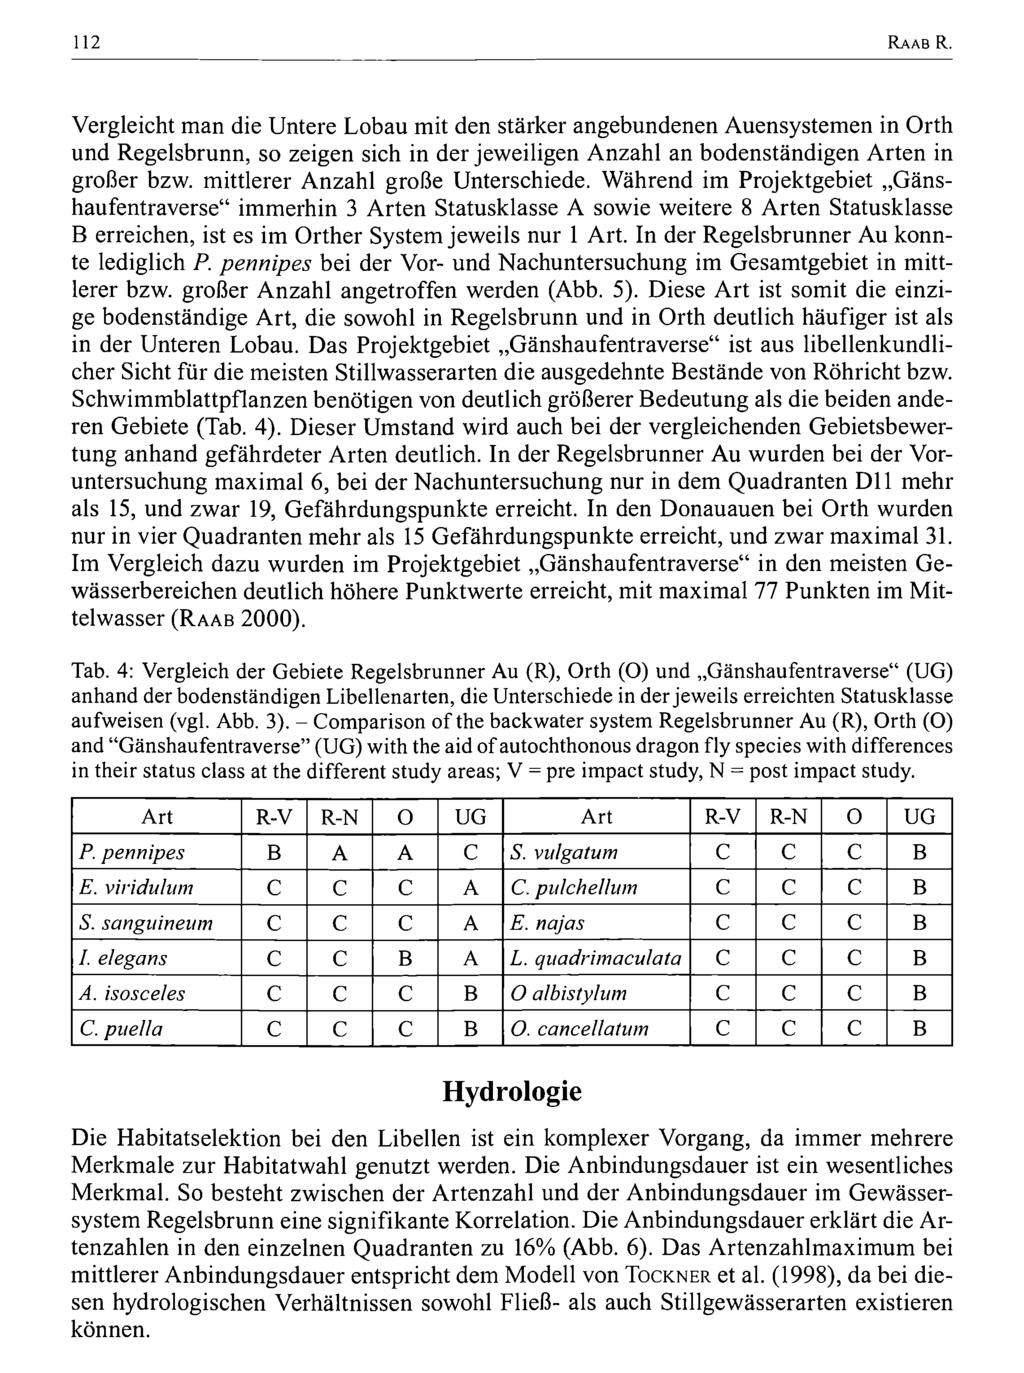 112 Zool.-Bot. Ges. Österreich, Austria; download unter www.biologiezentrum.at R a a b R.